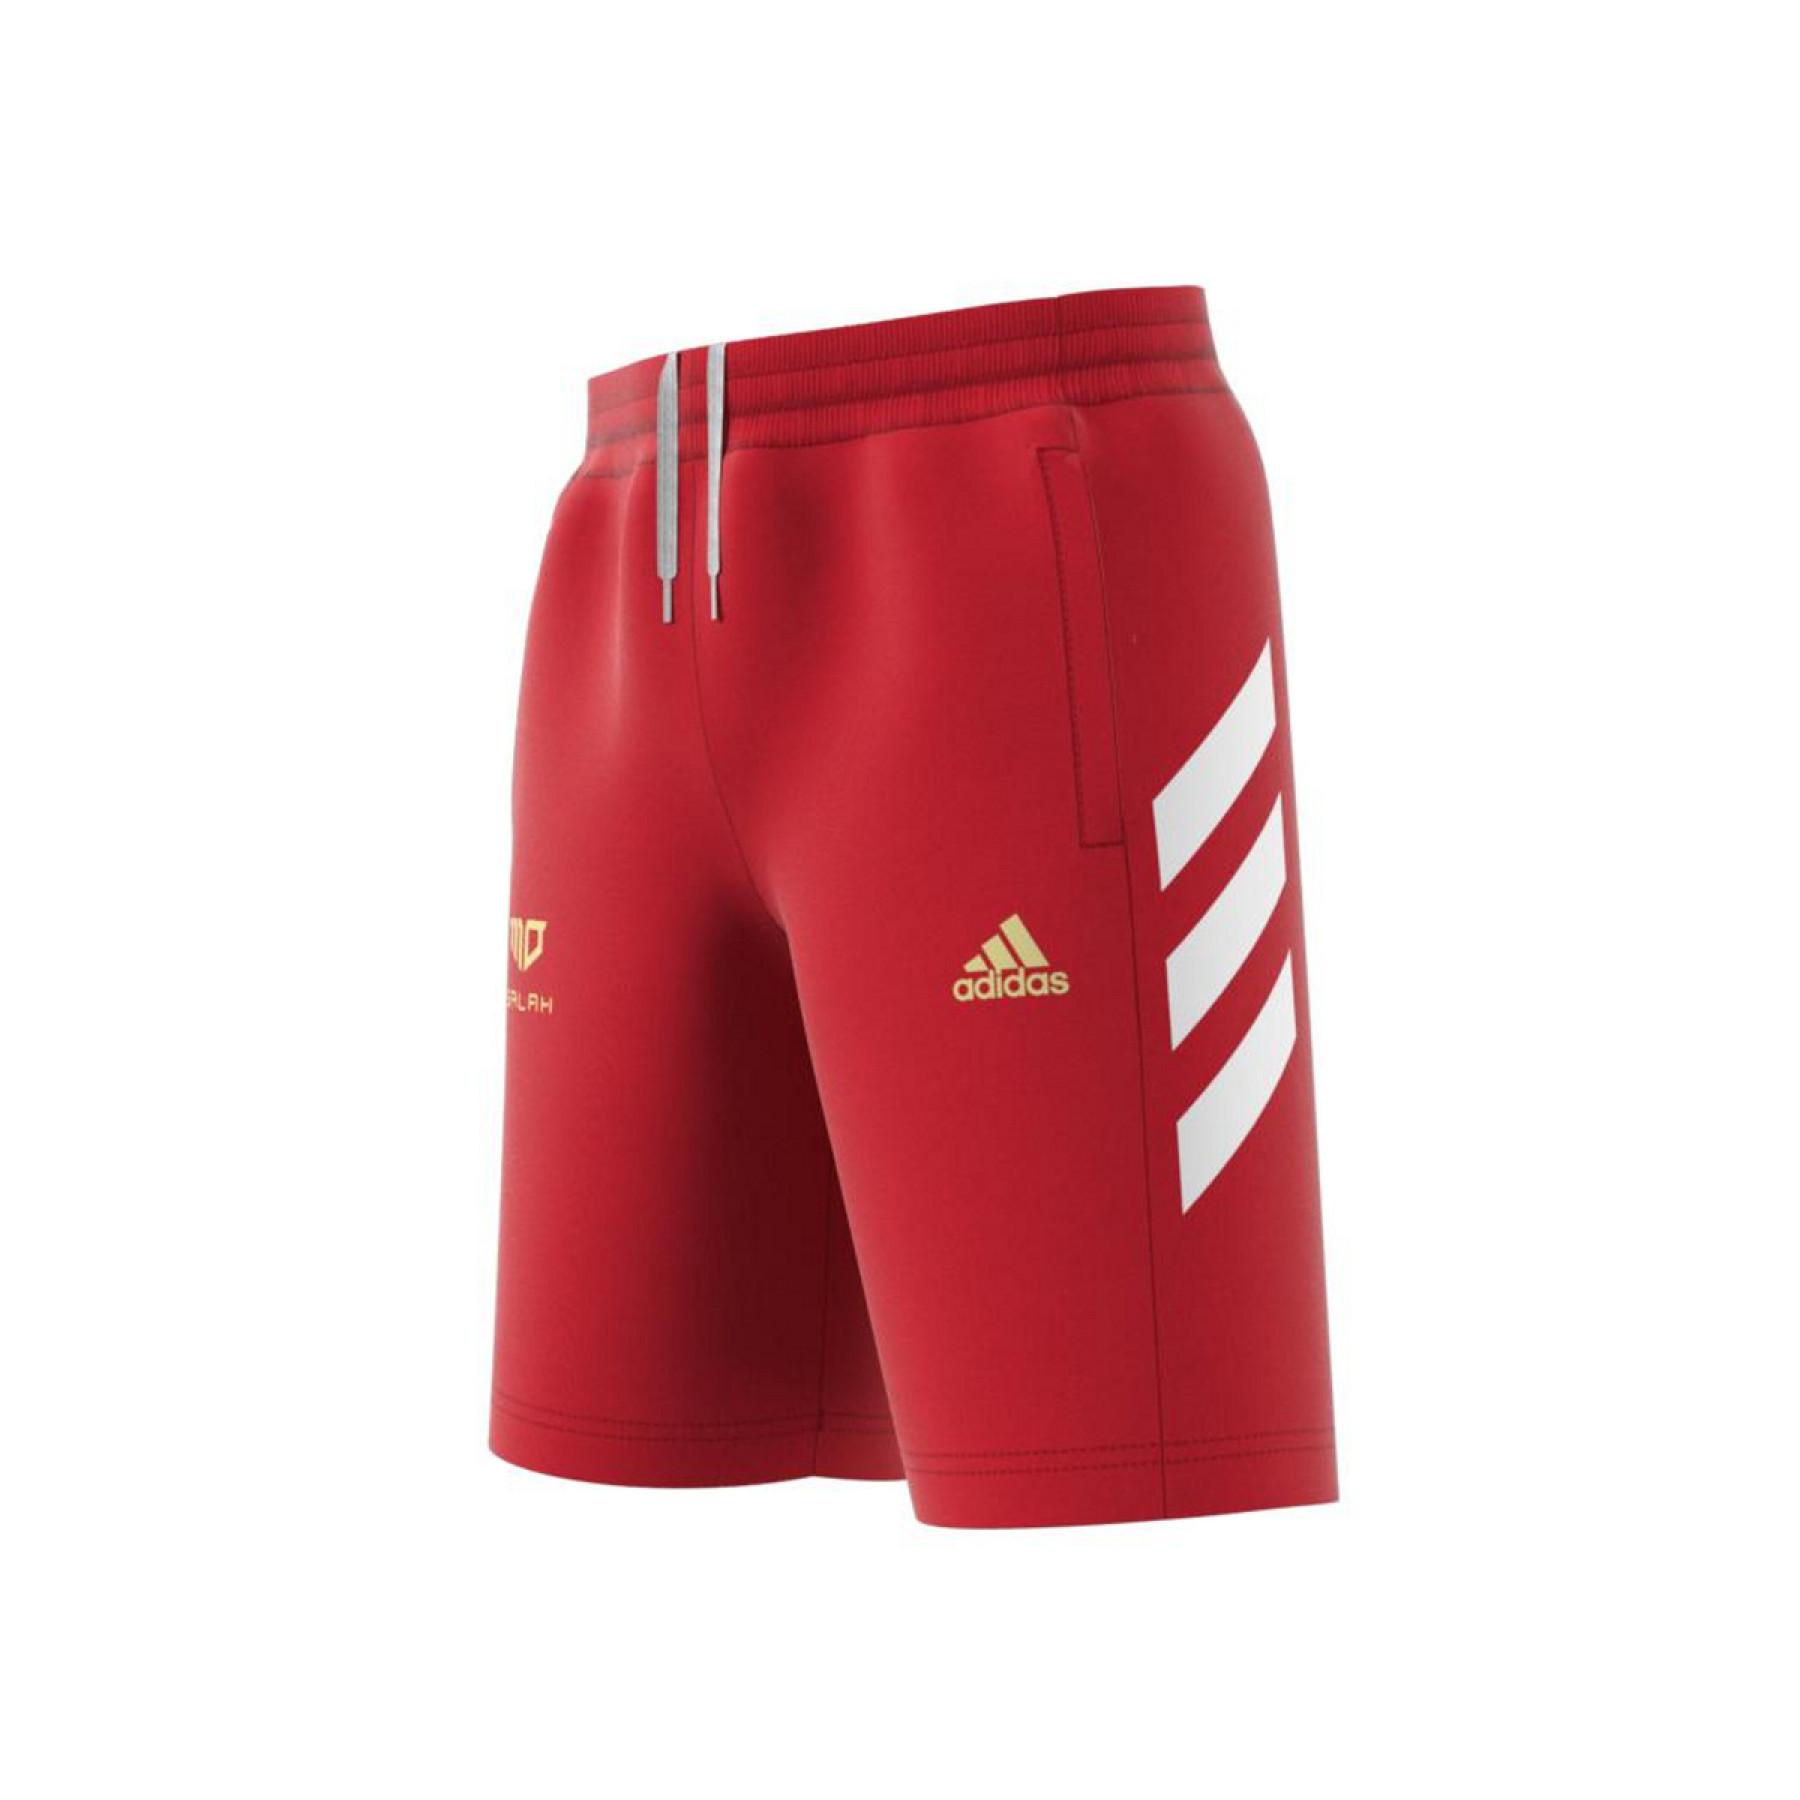 adidasalah Football Inspired Kids Shorts